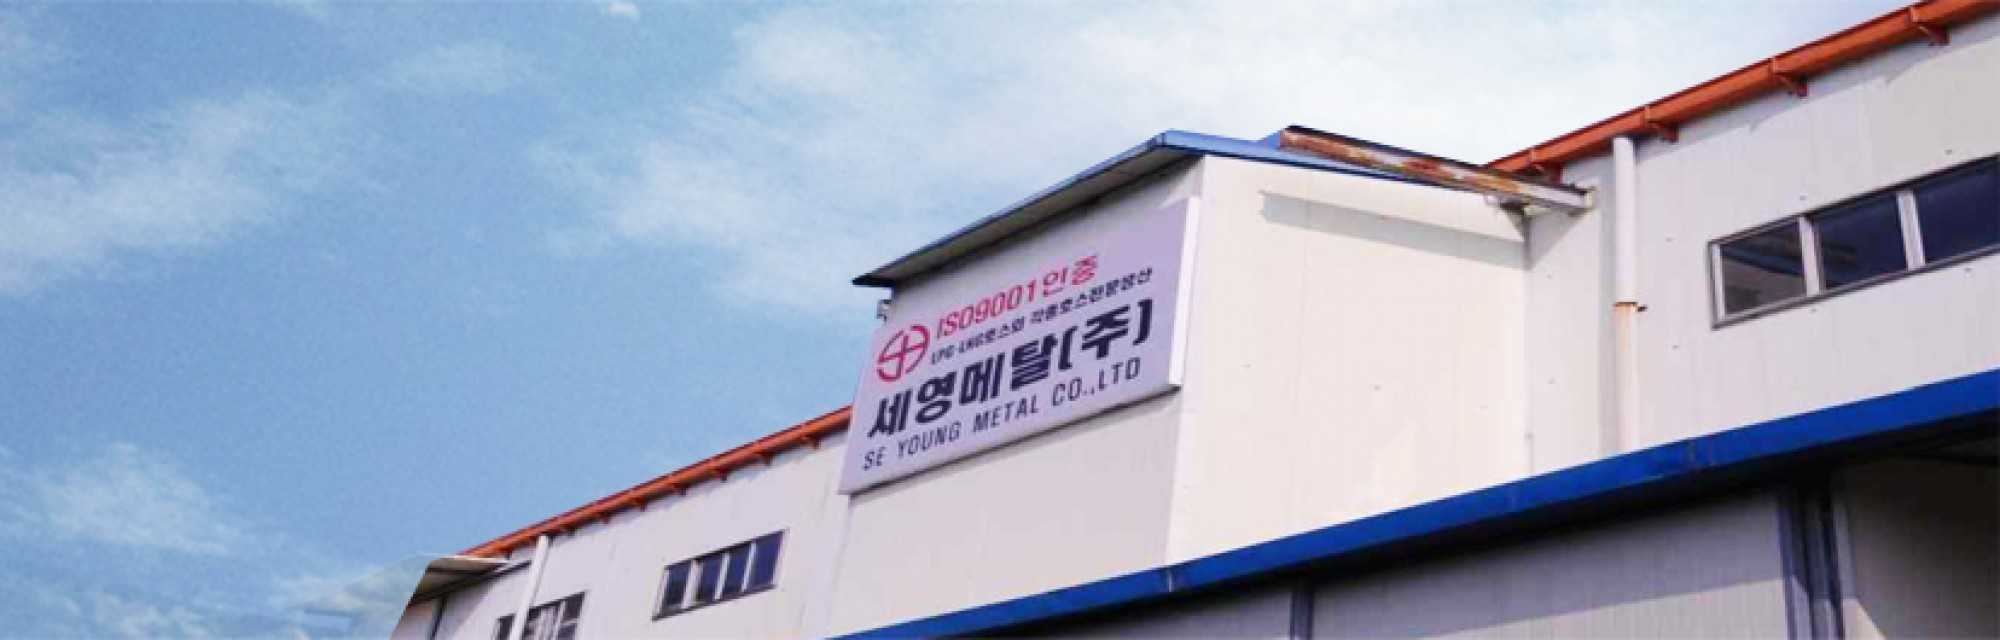 Seyonng Metal Co. Ltd